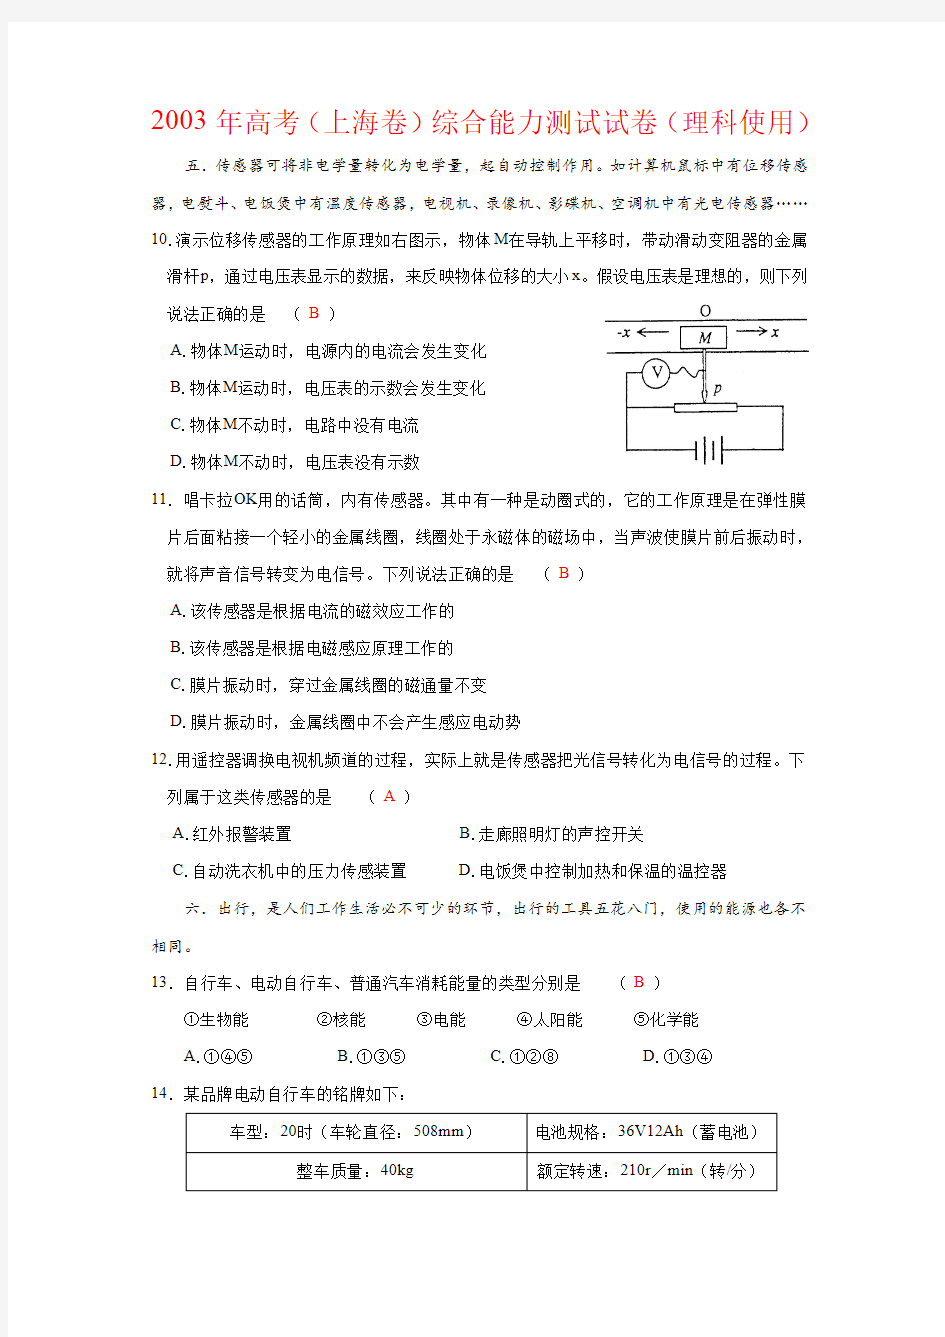 2003年高考(上海卷)综合能力测试试卷(理科使用)